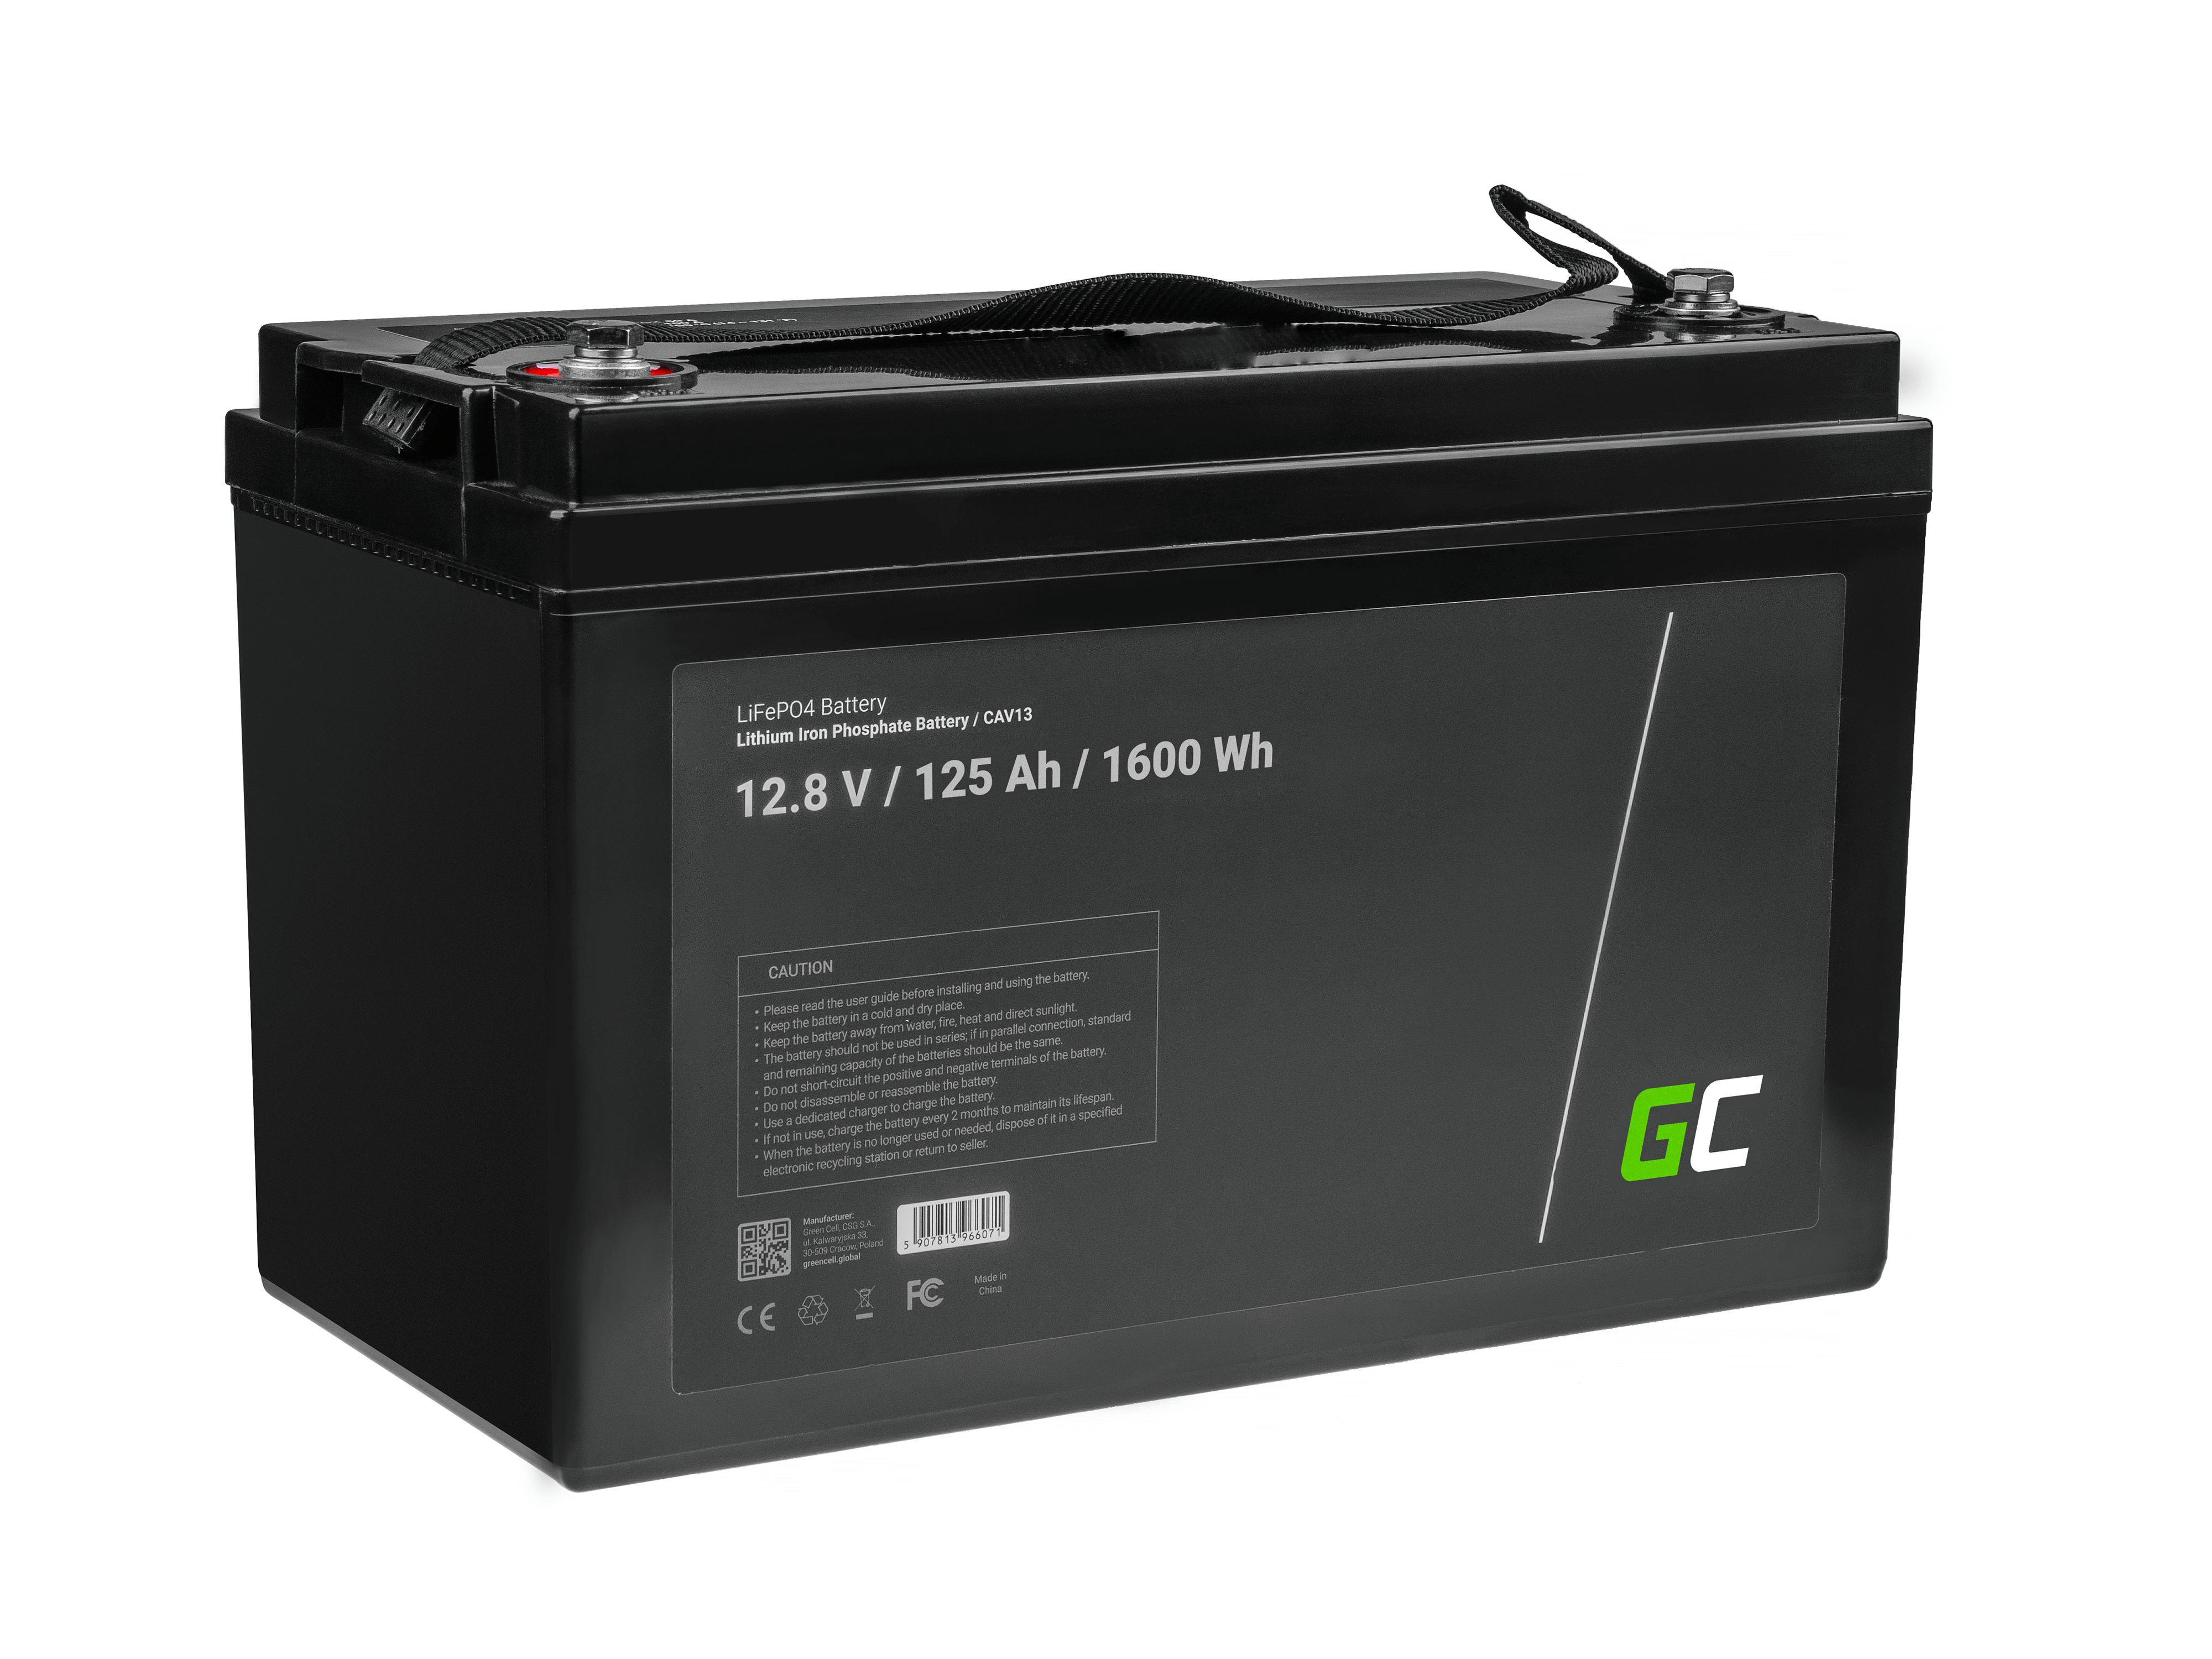 Baterie Green Cell Lithium-železo-fosfátová LiFePO4 baterie 12V, 12,8V 125Ah pro solární panely, obytné automobily a lodě